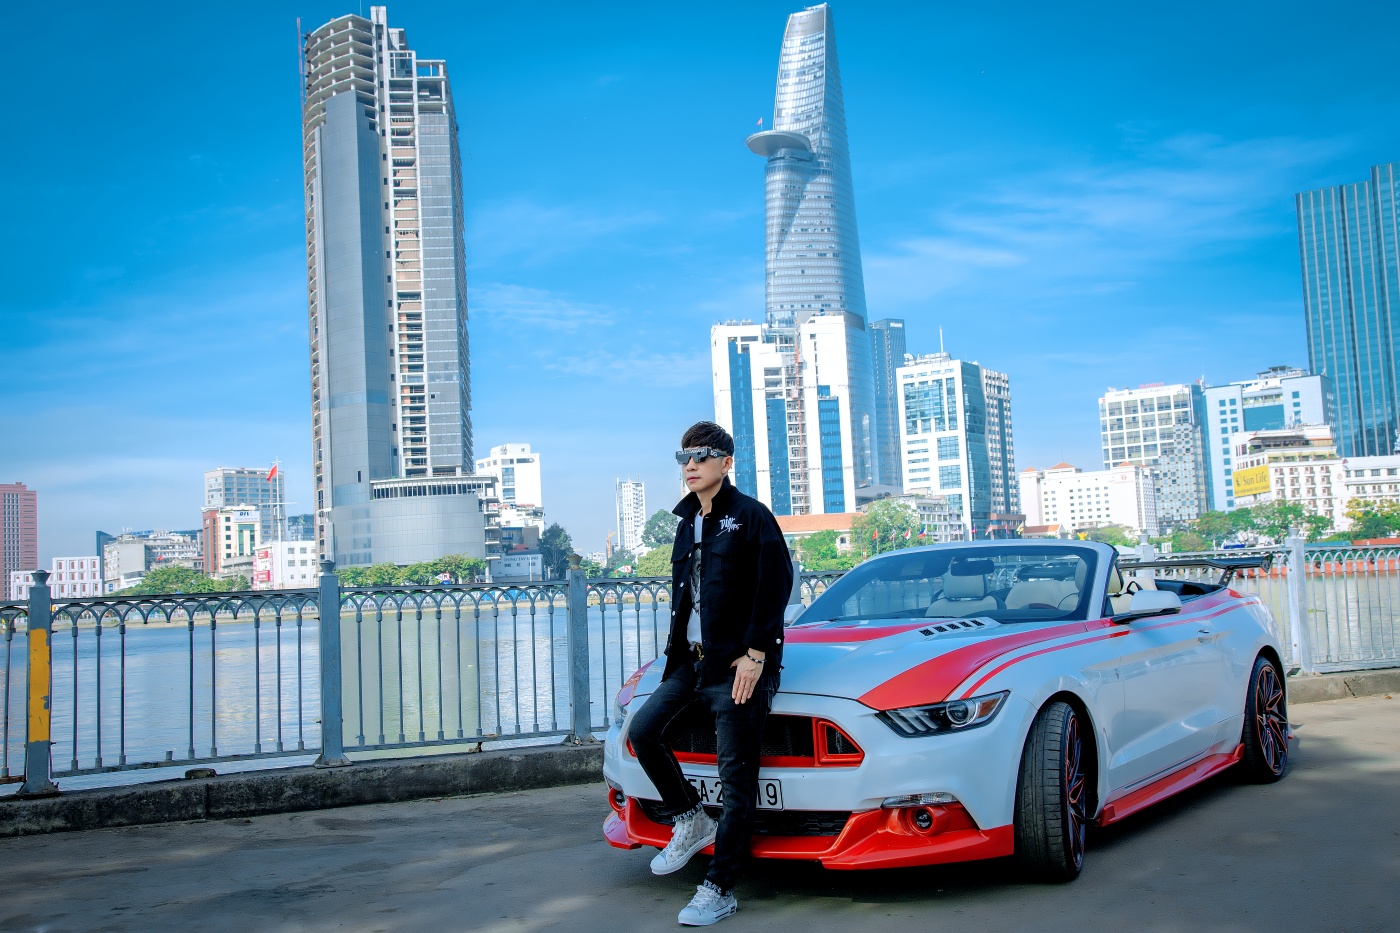 Châu Gia Kiệt đi siêu xe 5 tỷ đồng trong MV mới - ảnh 2